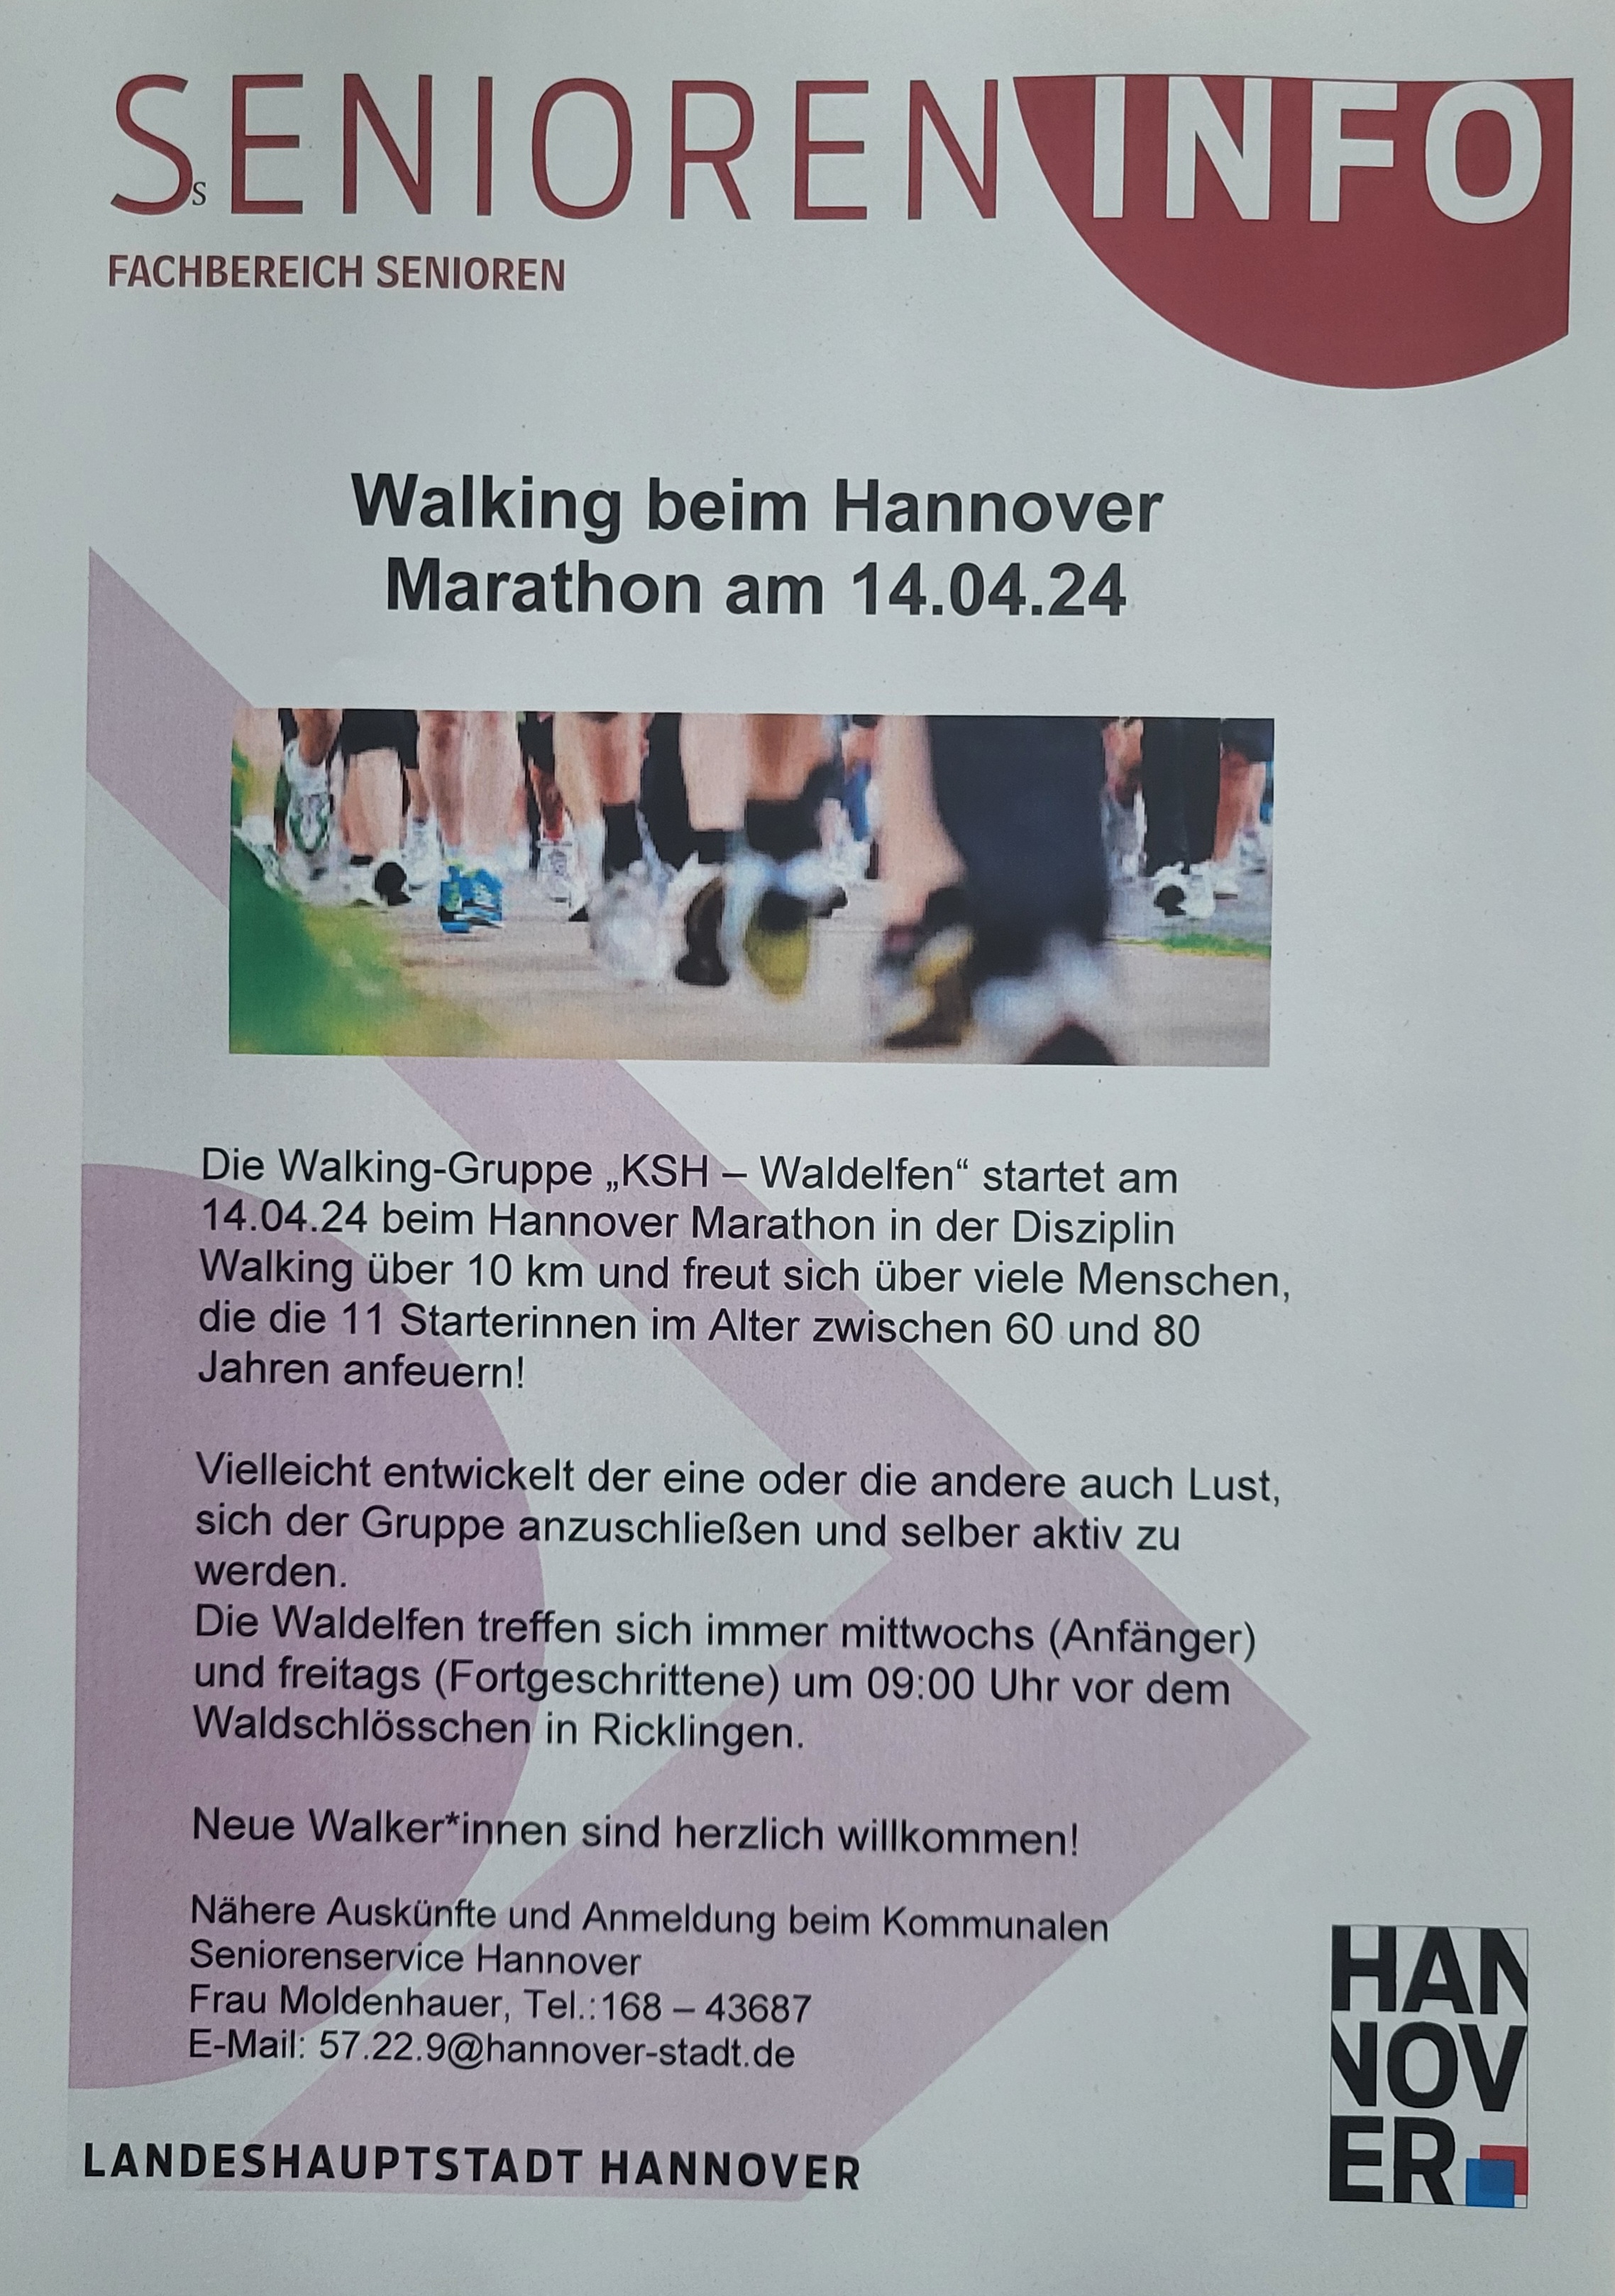 Walking beim Hannover Marathon am 14.04.24